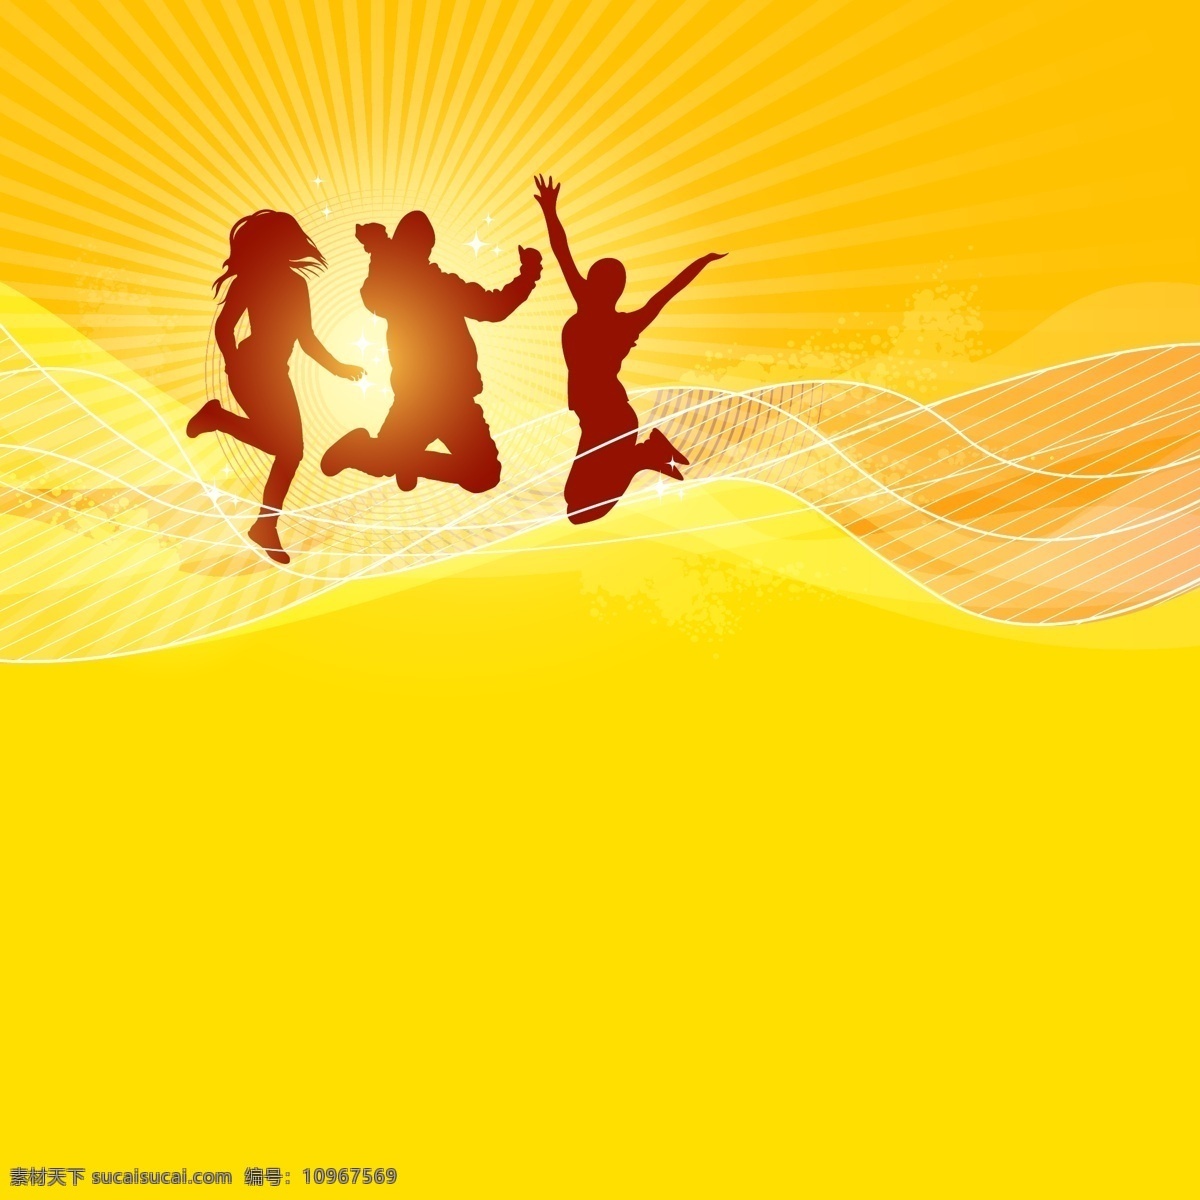 背景板 朝阳初升 黄色背景图 金色背景图 金色模板 黄色背景模板 金色矢量图 飘带适量 跳跃 人物矢量图